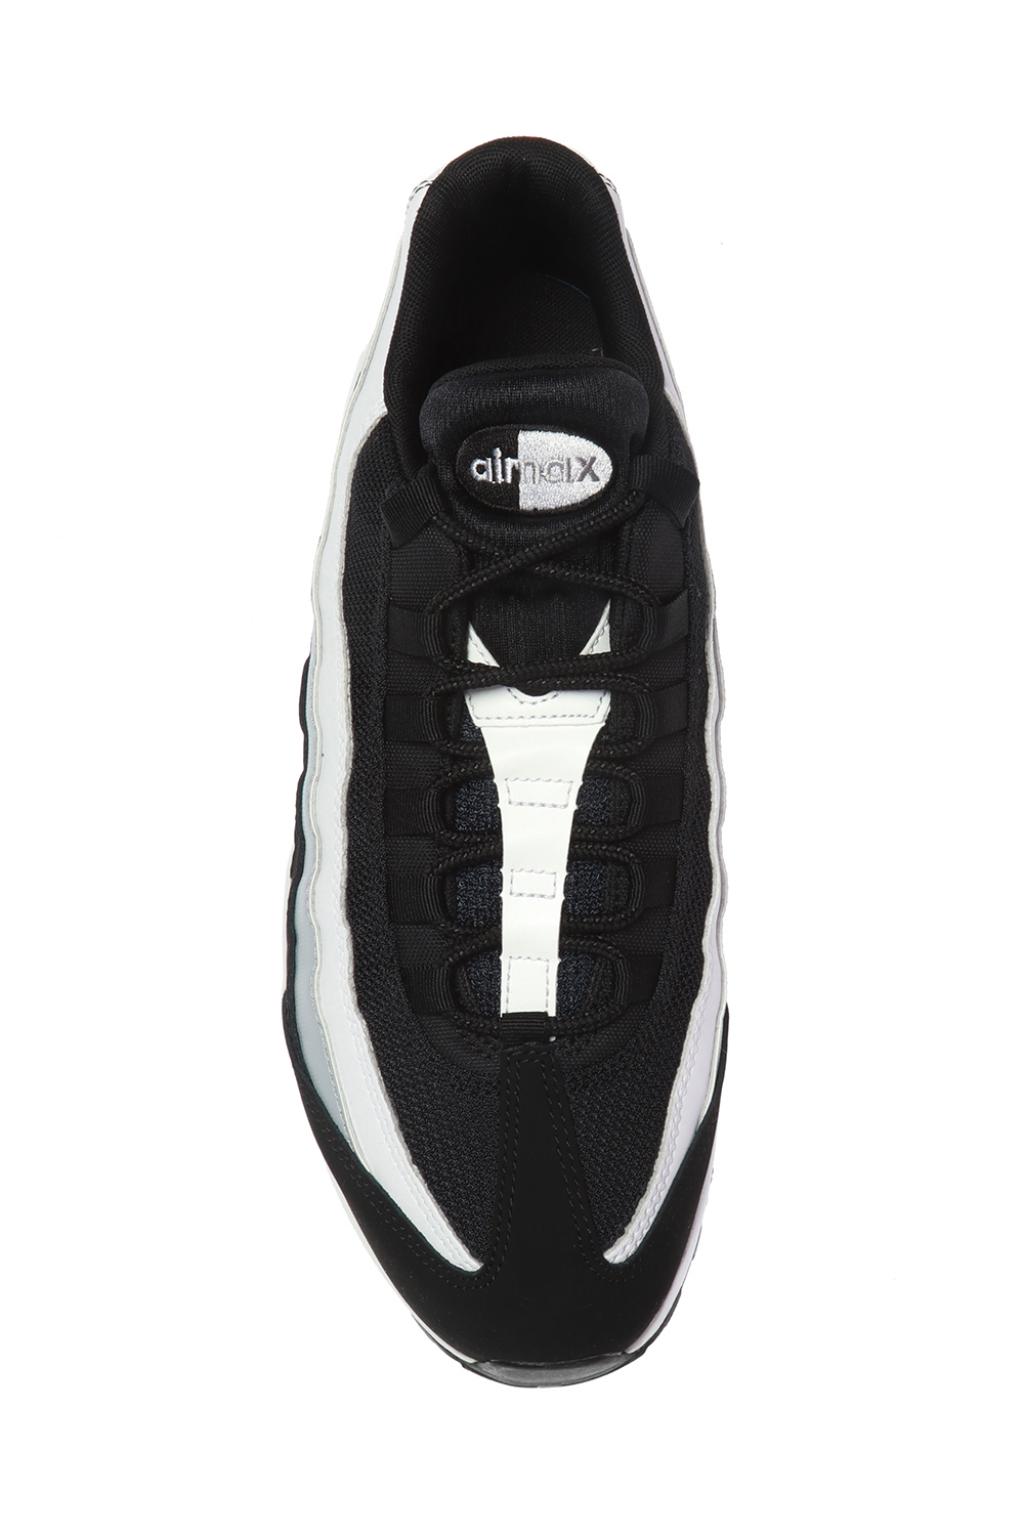 Black 'Air Max 95 Essential' sneakers Nike - Vitkac Canada